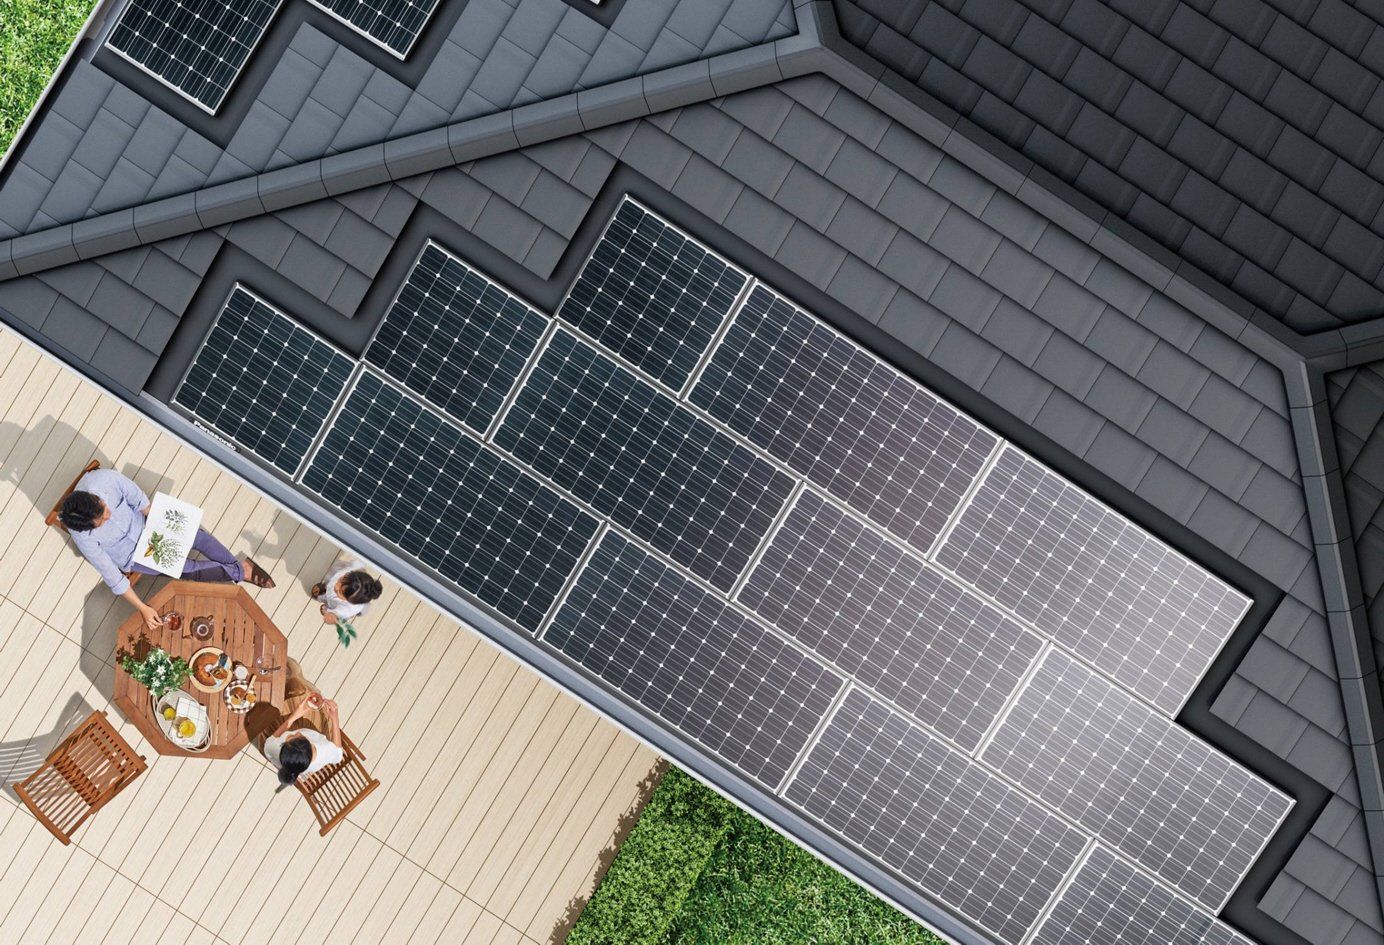 Detrazione fiscale e fotovoltaico: cosa c'è da sapere